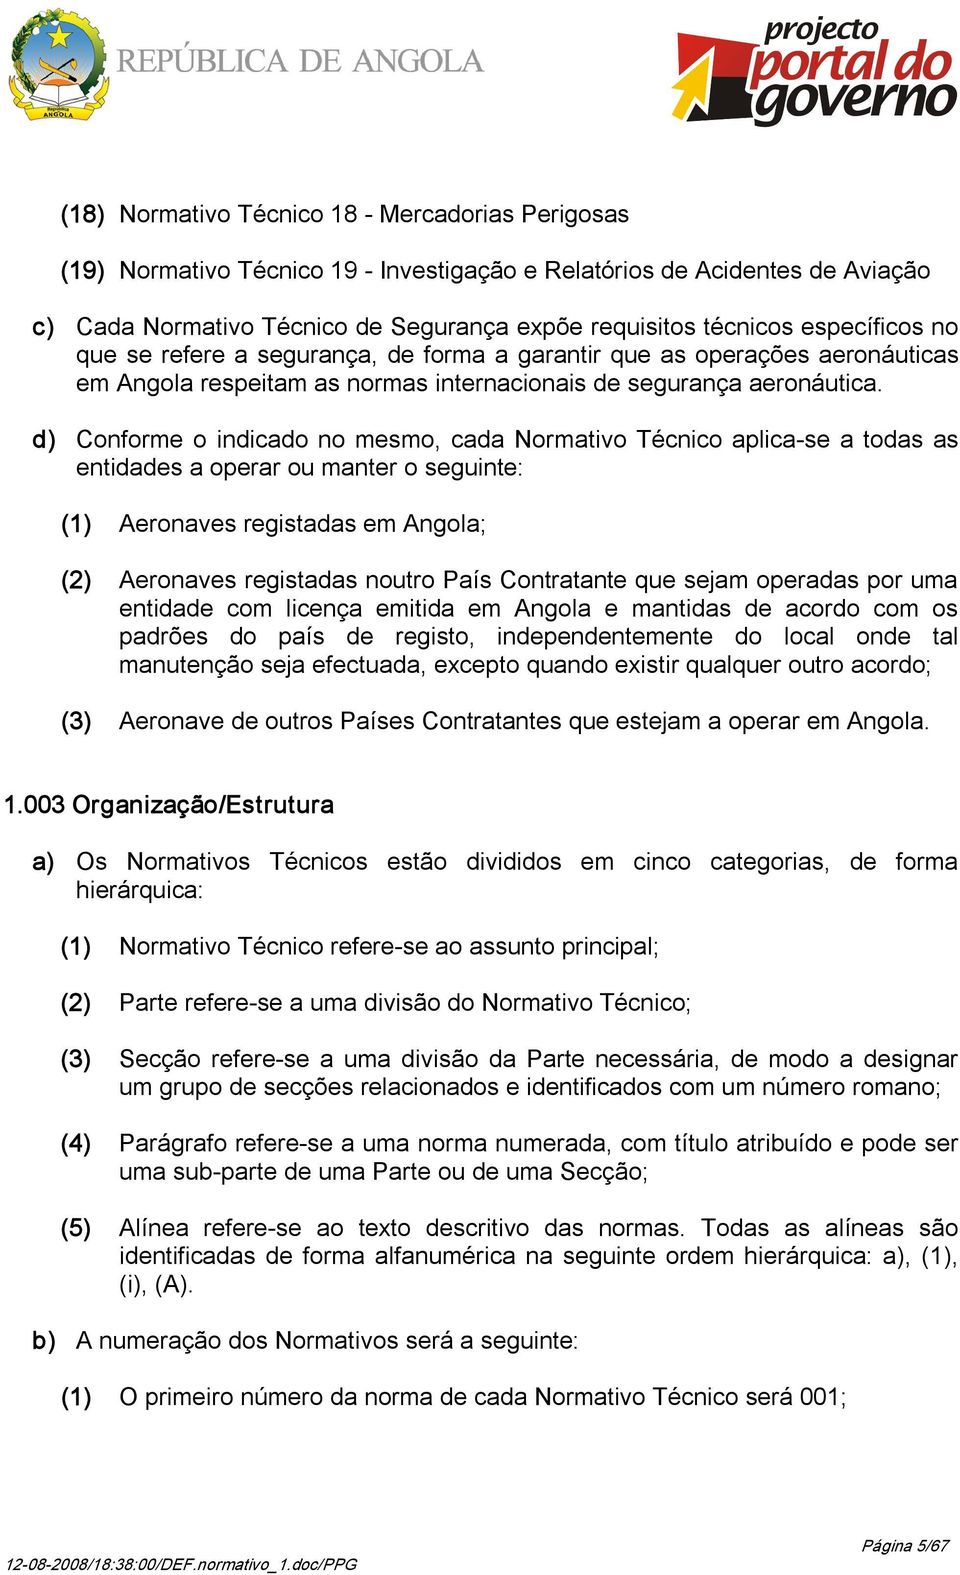 d) Conforme o indicado no mesmo, cada Normativo Técnico aplica se a todas as entidades a operar ou manter o seguinte: (1) Aeronaves registadas em Angola; (2) Aeronaves registadas noutro País